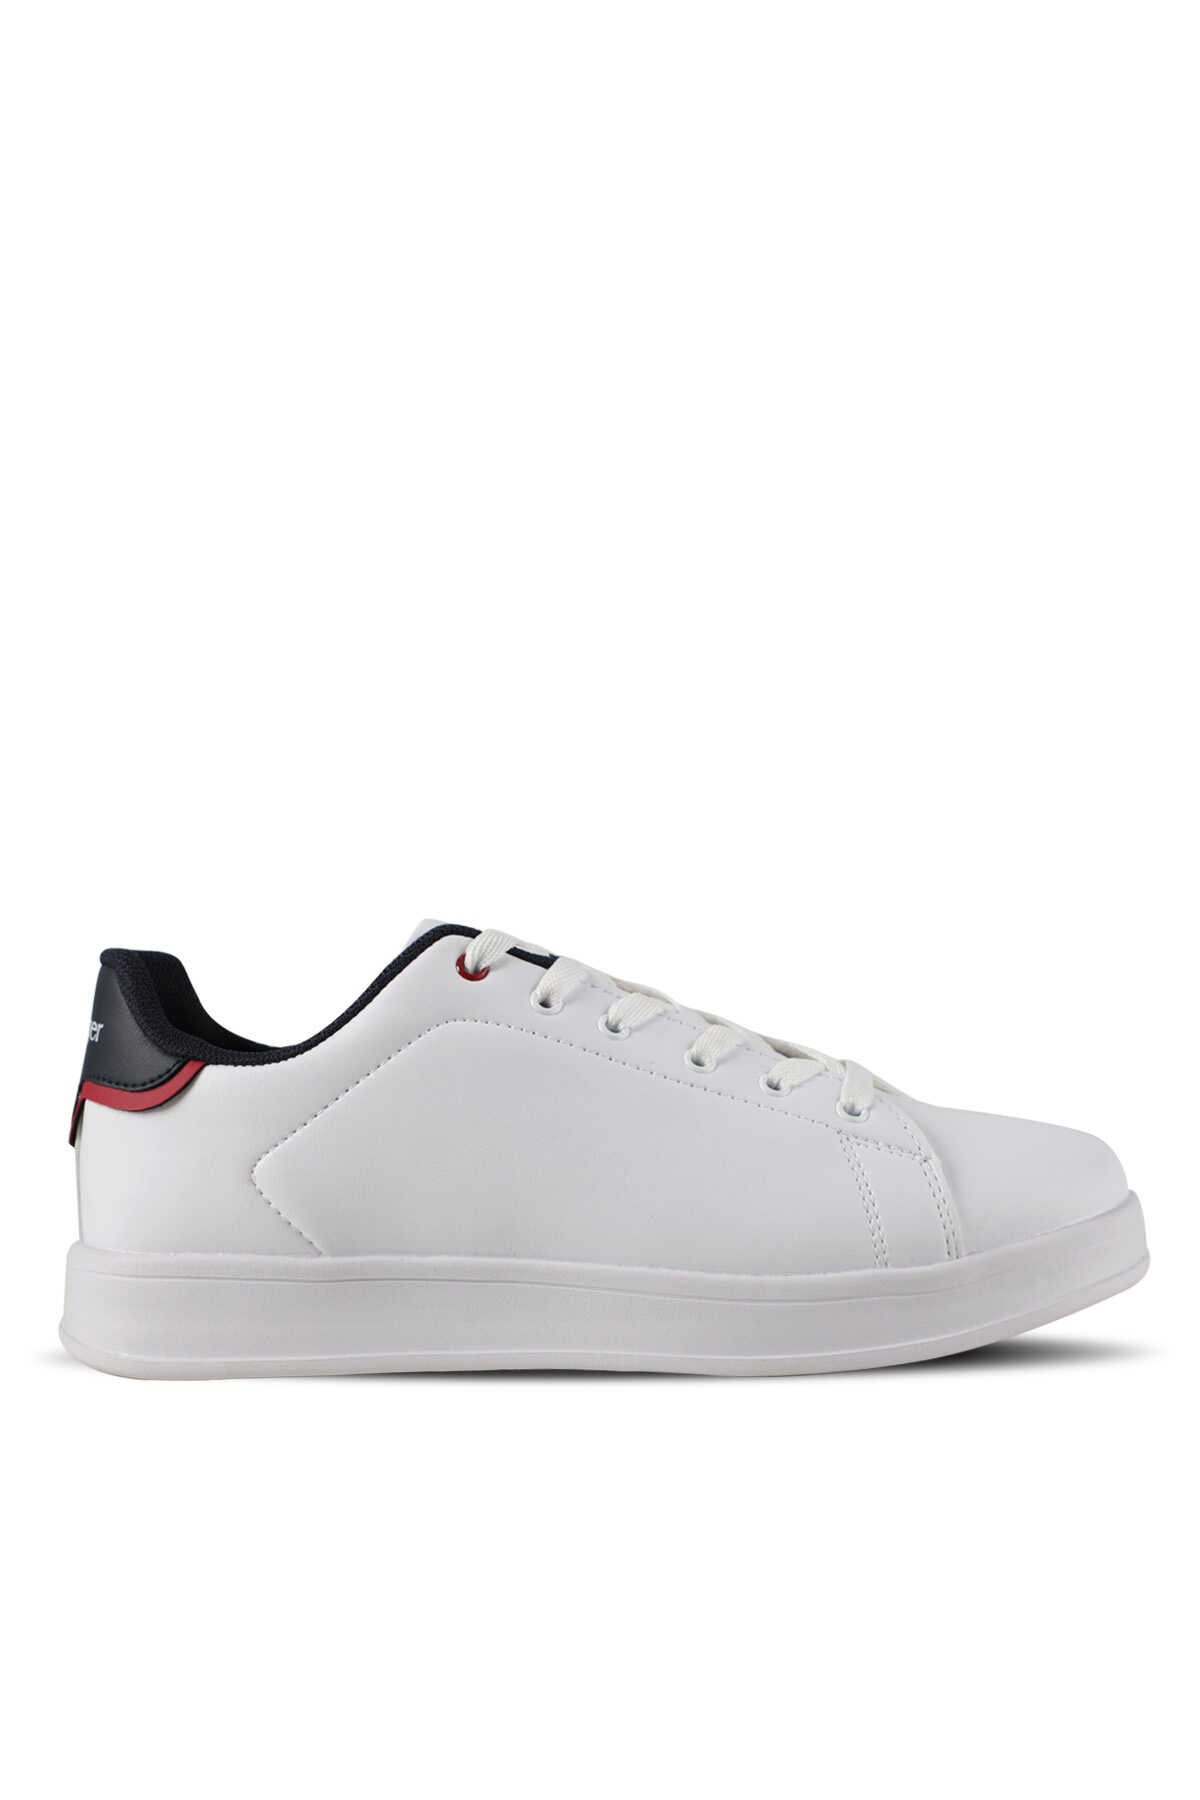 Slazenger - Slazenger ORFEX H Sneaker Erkek Ayakkabı Beyaz / Kırmızı